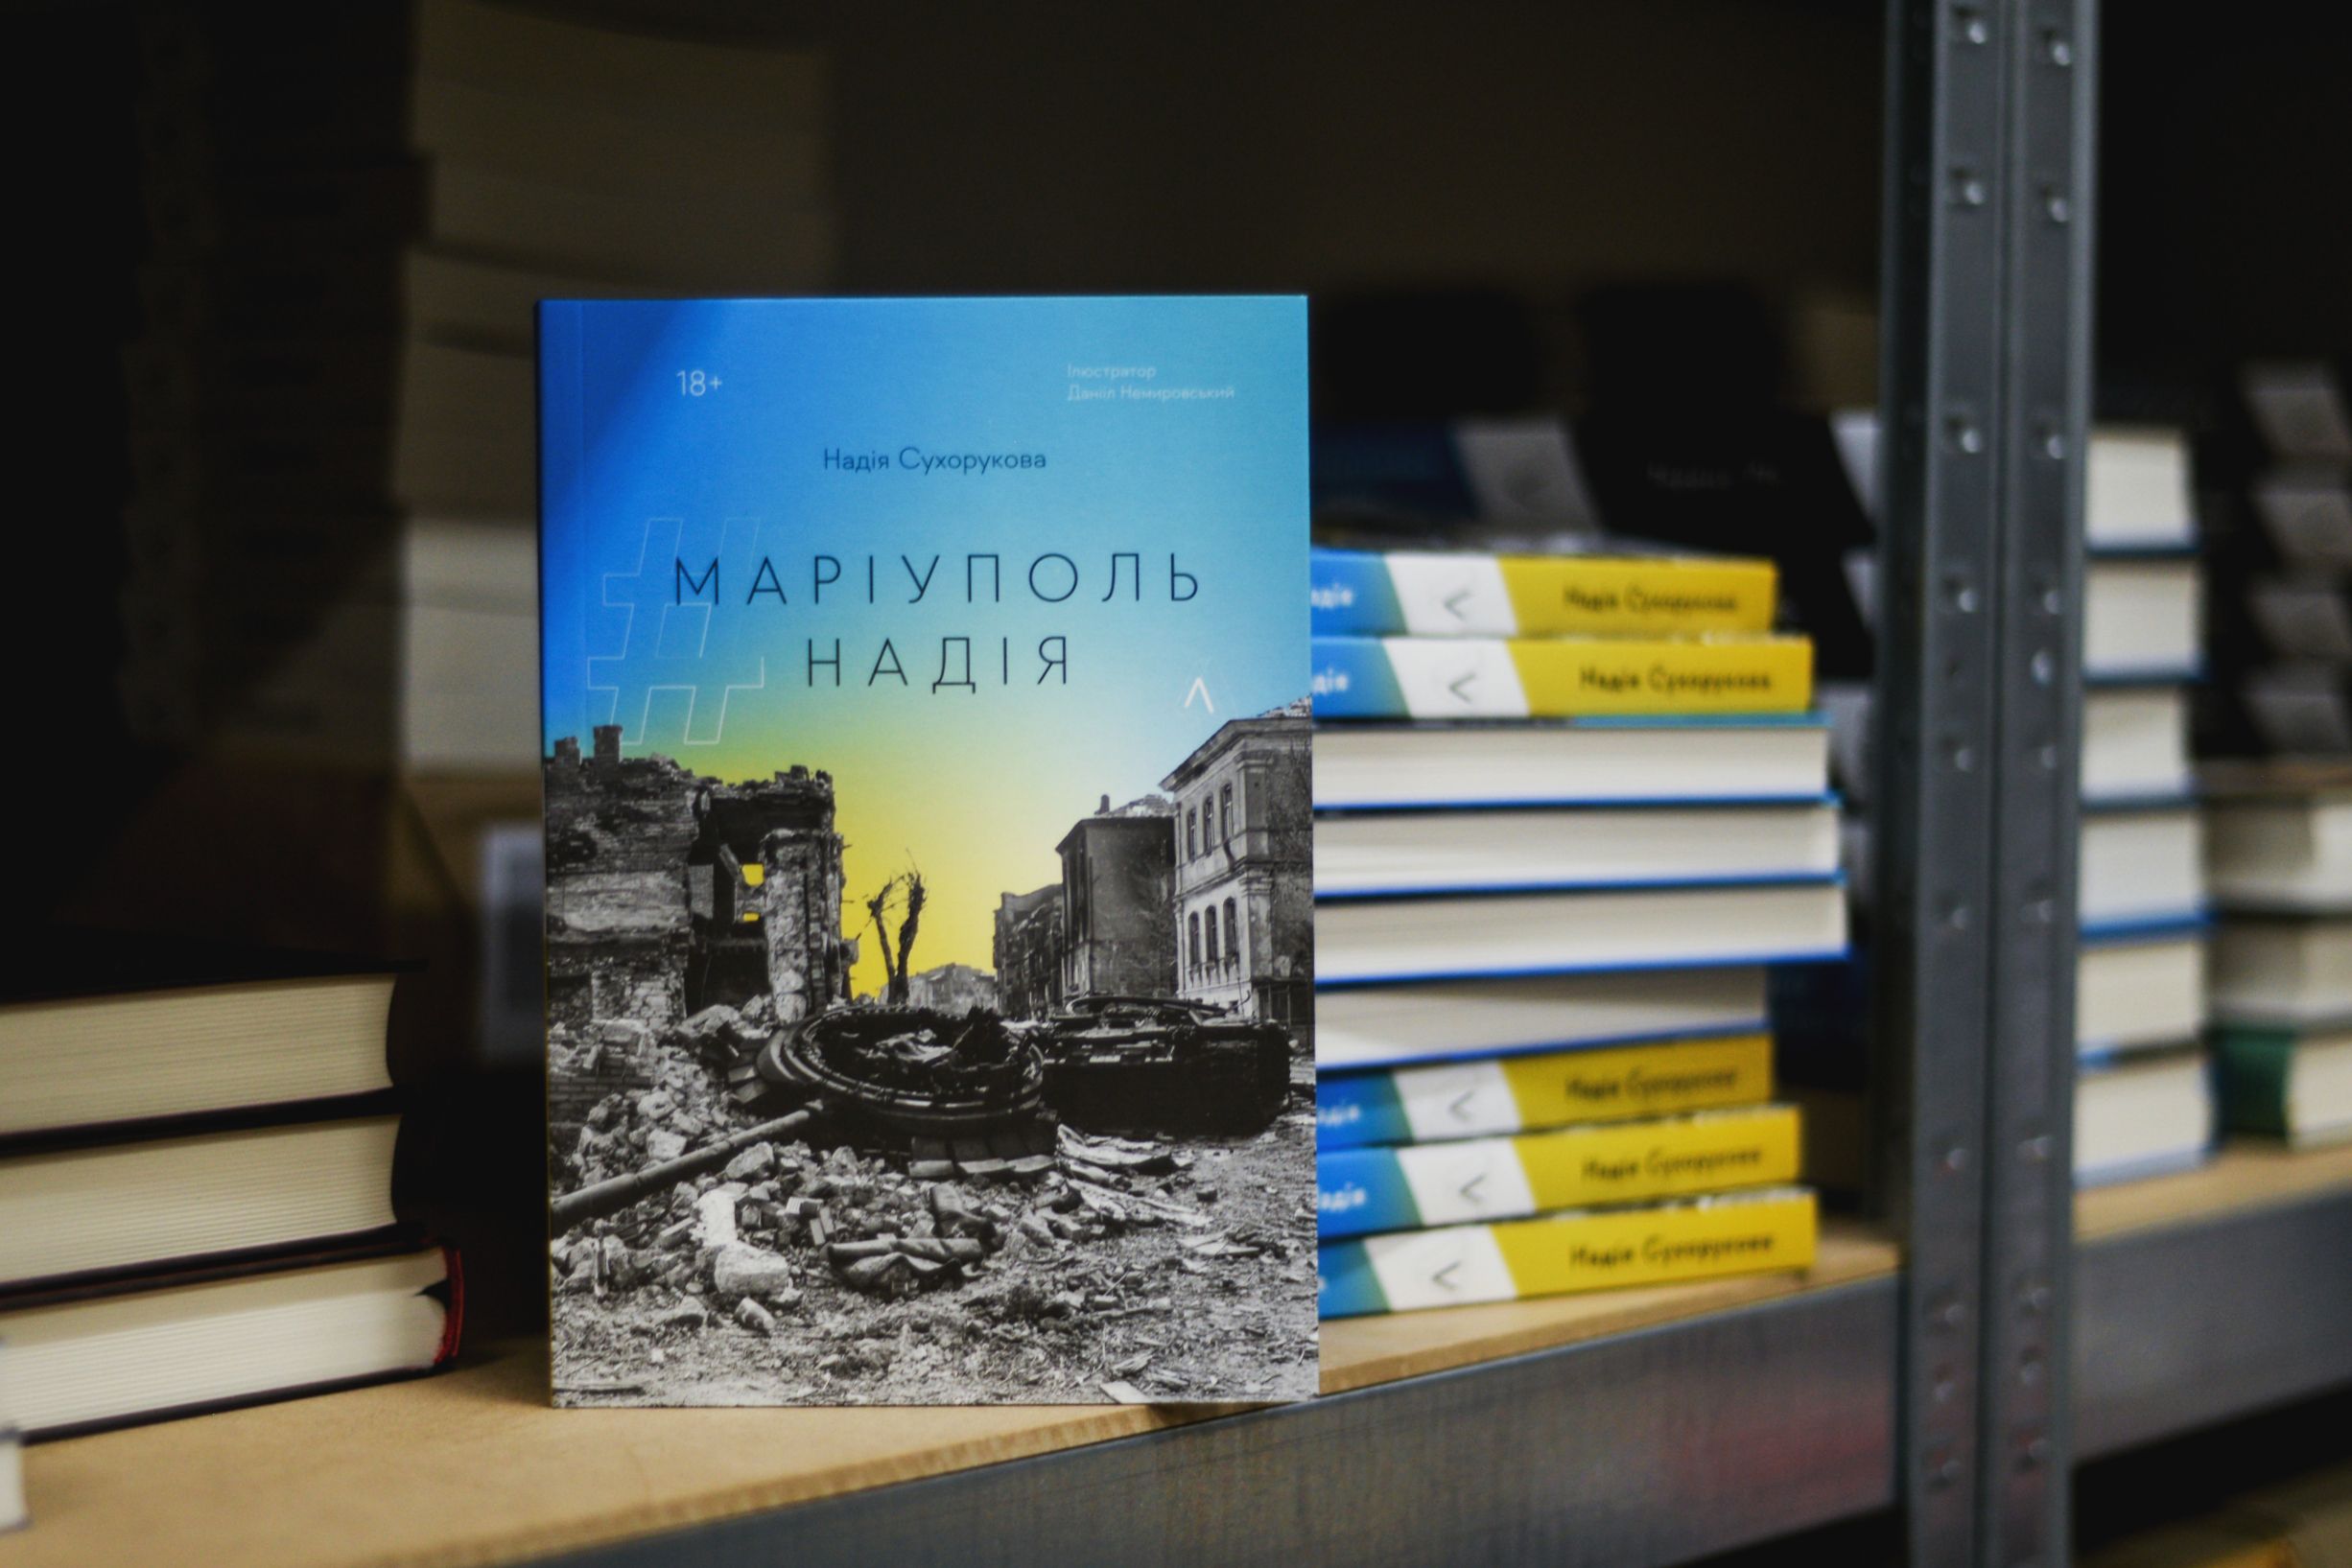 Надежда Сухорукова издала блокадный дневник Мариуполь Надежда